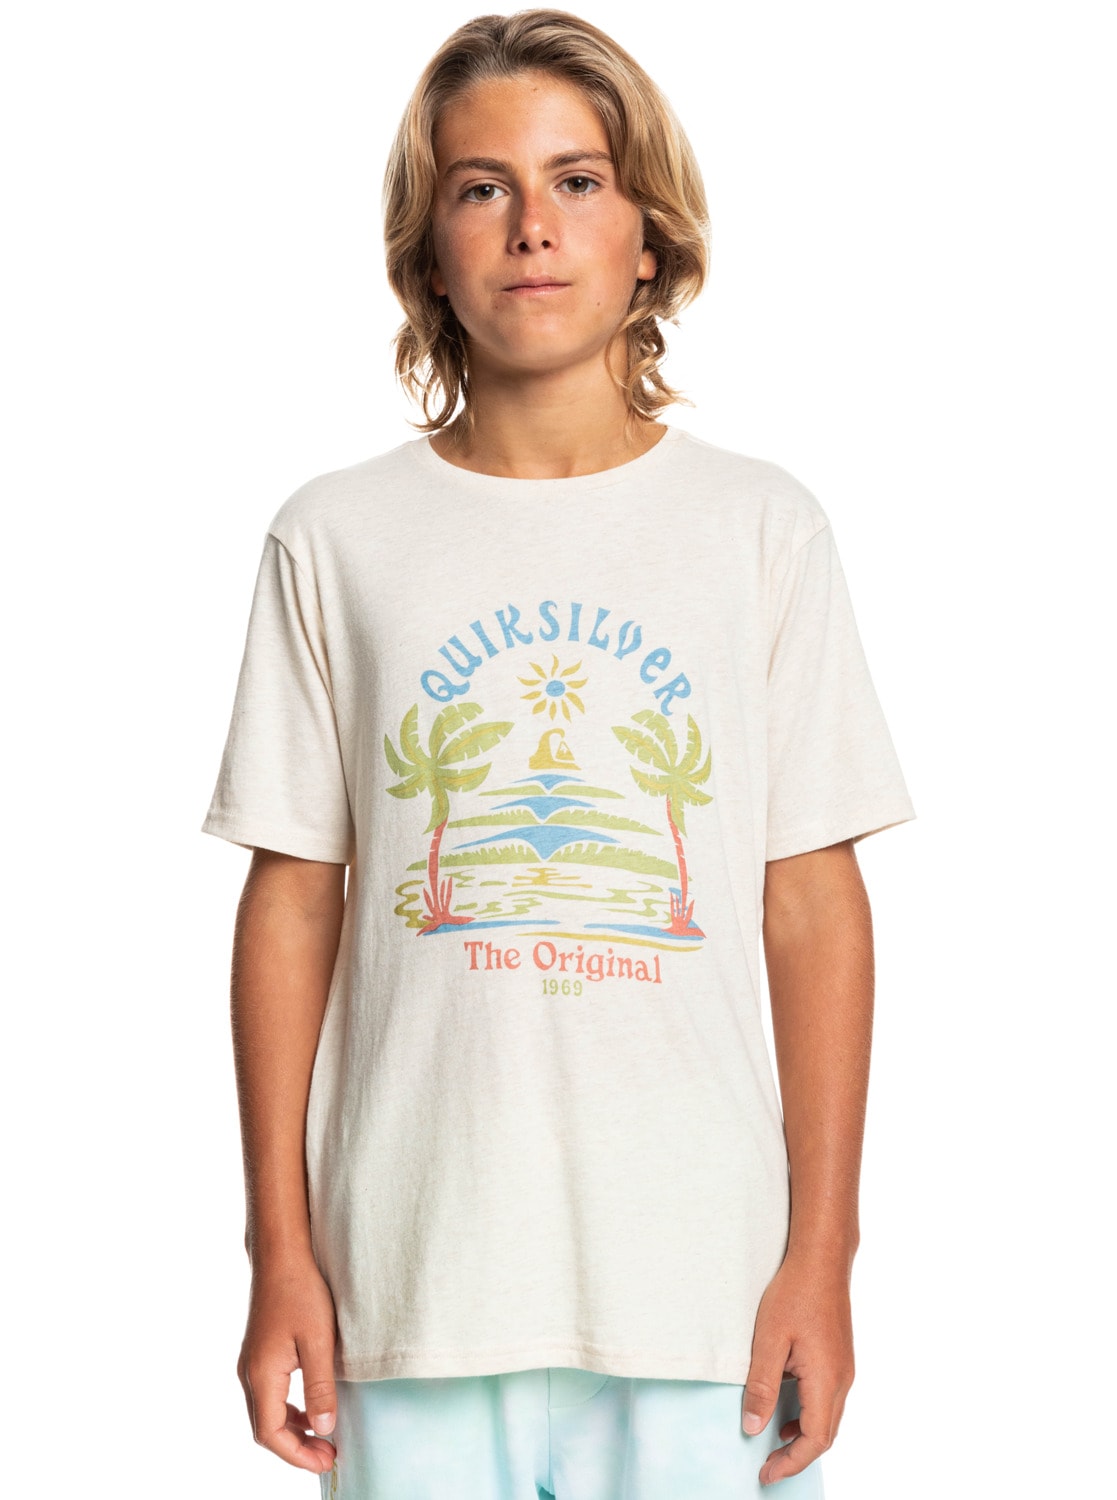 Trendige Quiksilver T-Shirt kaufen - Mindestbestellwert versandkostenfrei Days« ohne »Strange